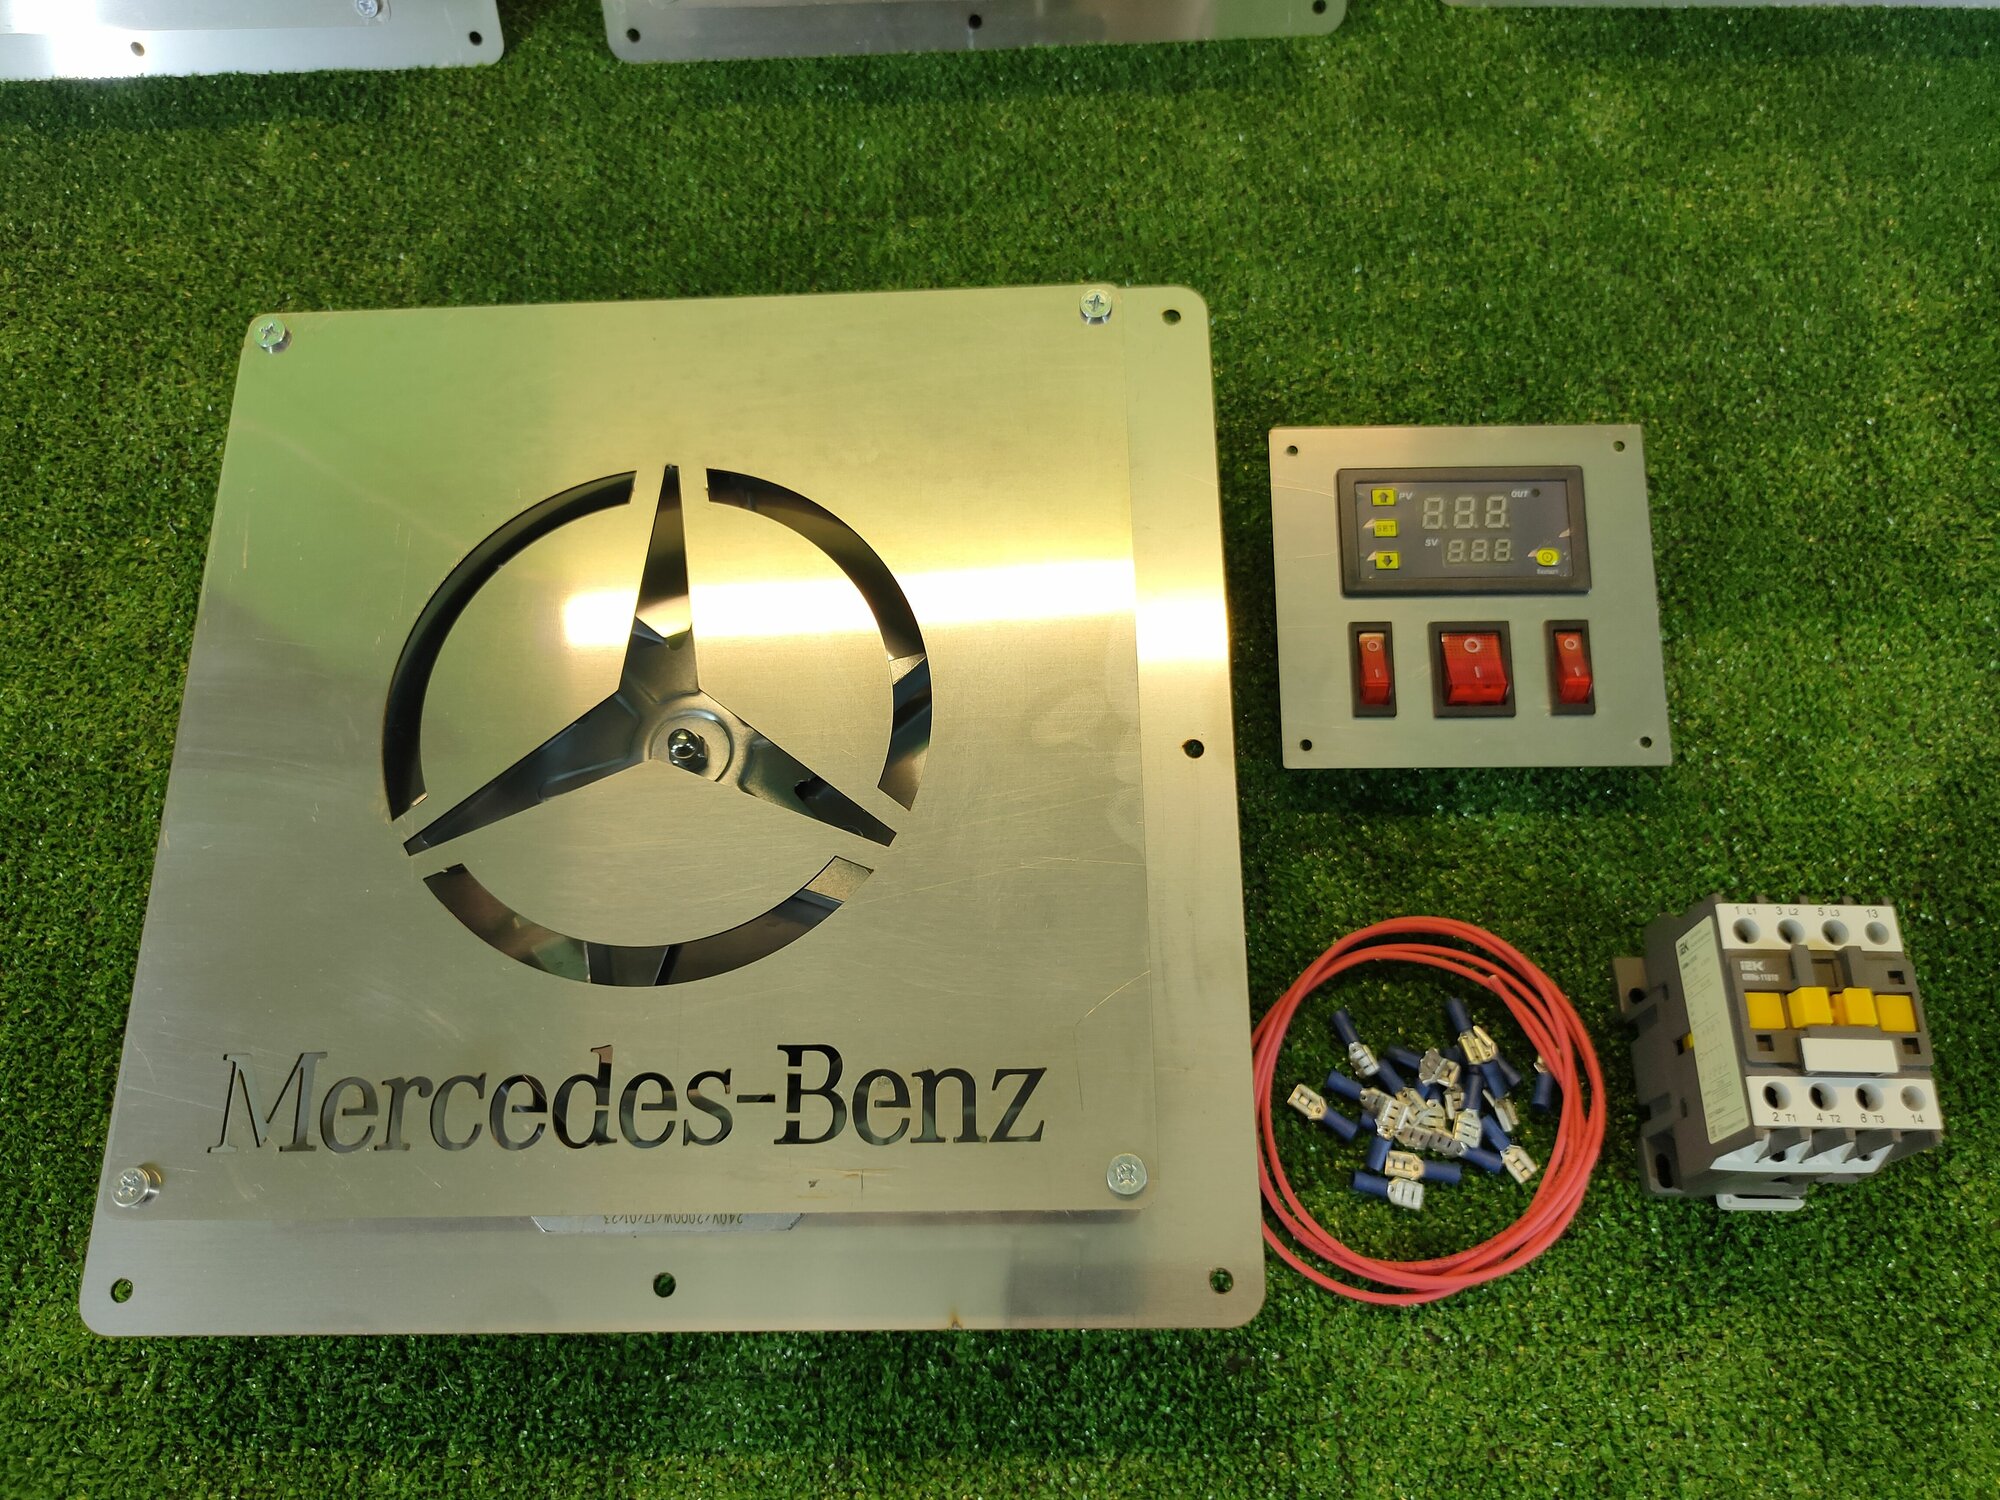 Конвекция для коптильни Mercedes ТЭН 2кВт+панель управления+контактор 10кВт